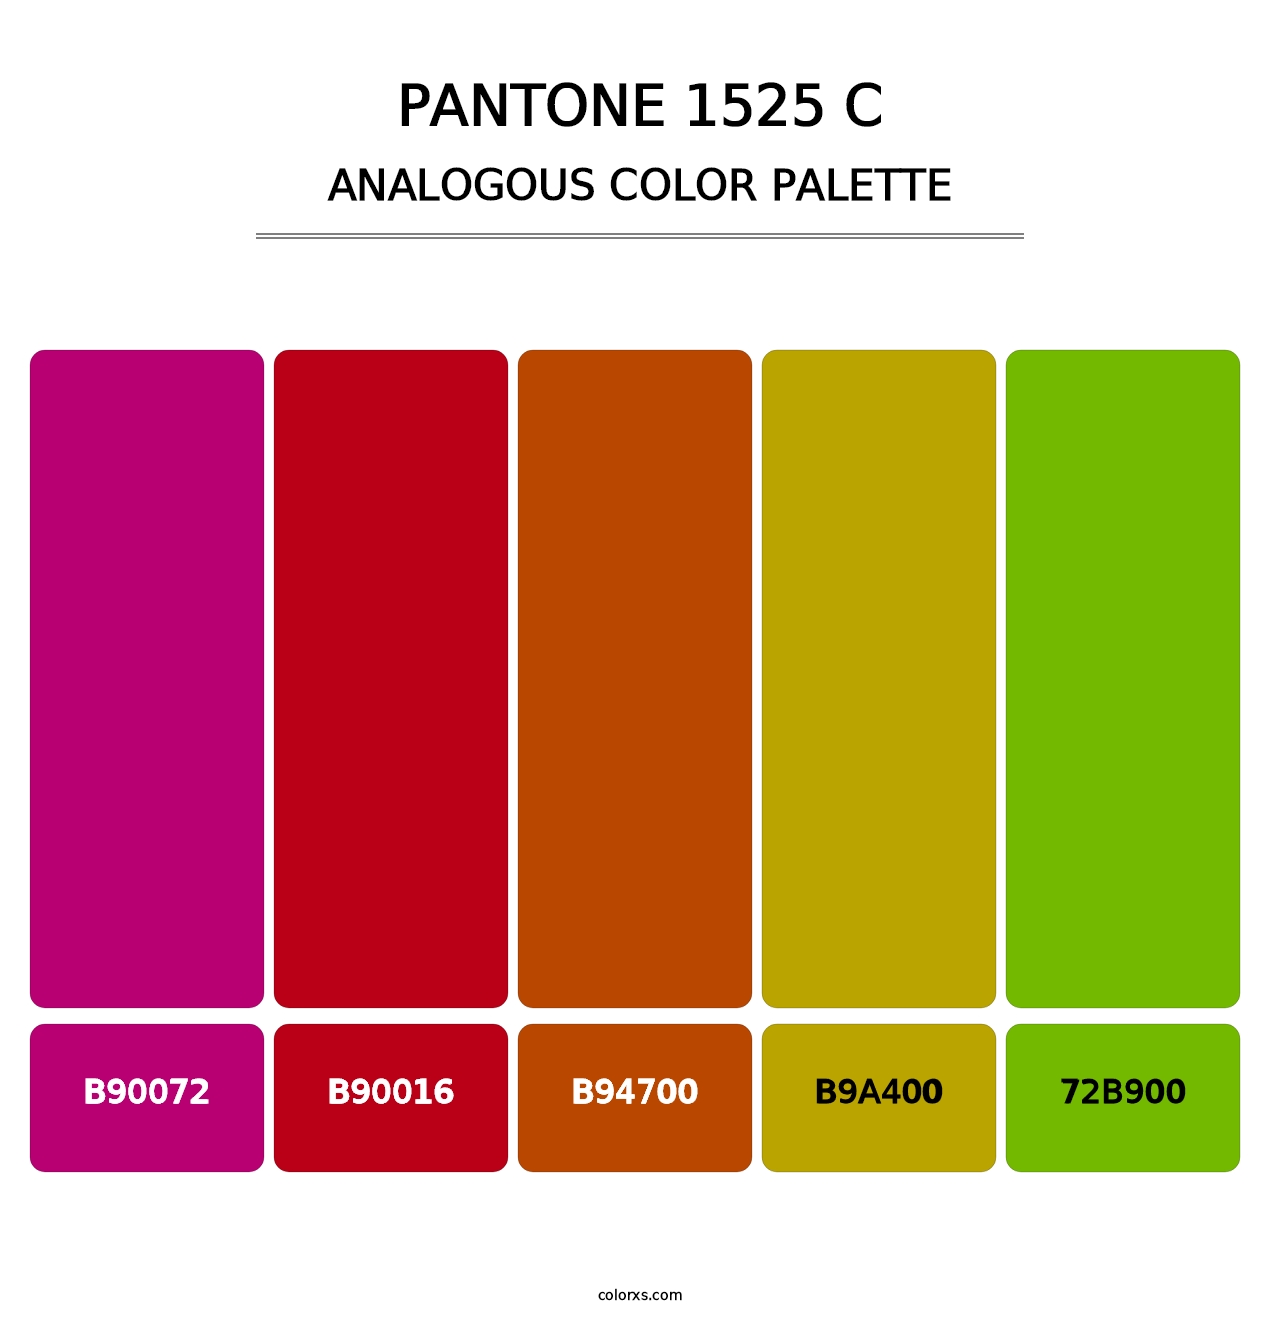 PANTONE 1525 C - Analogous Color Palette